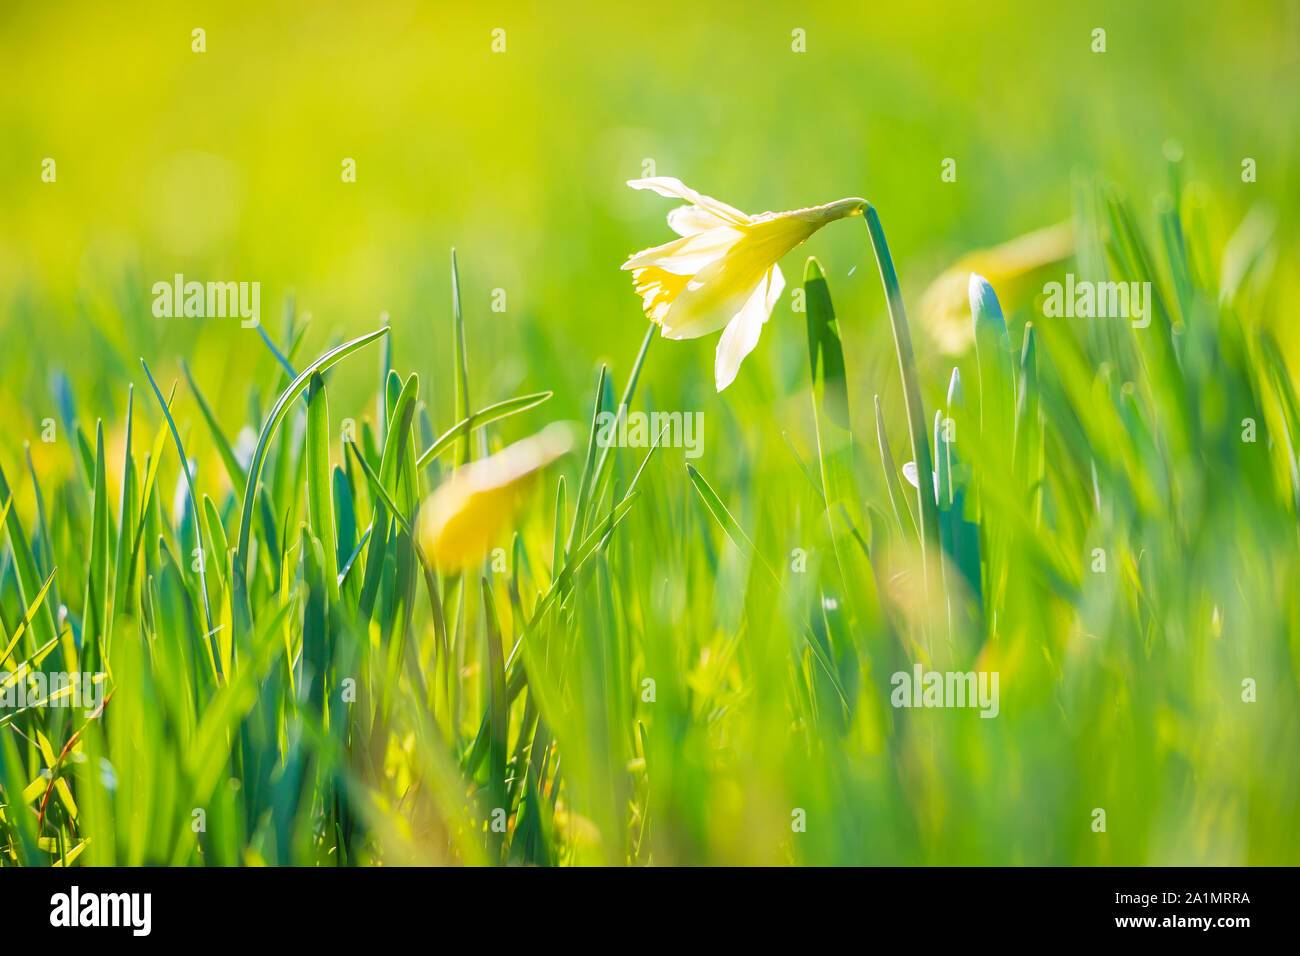 Gelbe narzisse Blume oder Fastenzeit Lily, Narcissus pseudonarcissus, blühen in einer grünen Wiese im Frühling an einem sonnigen Tag und dem klaren, blauen Himmel. Stockfoto